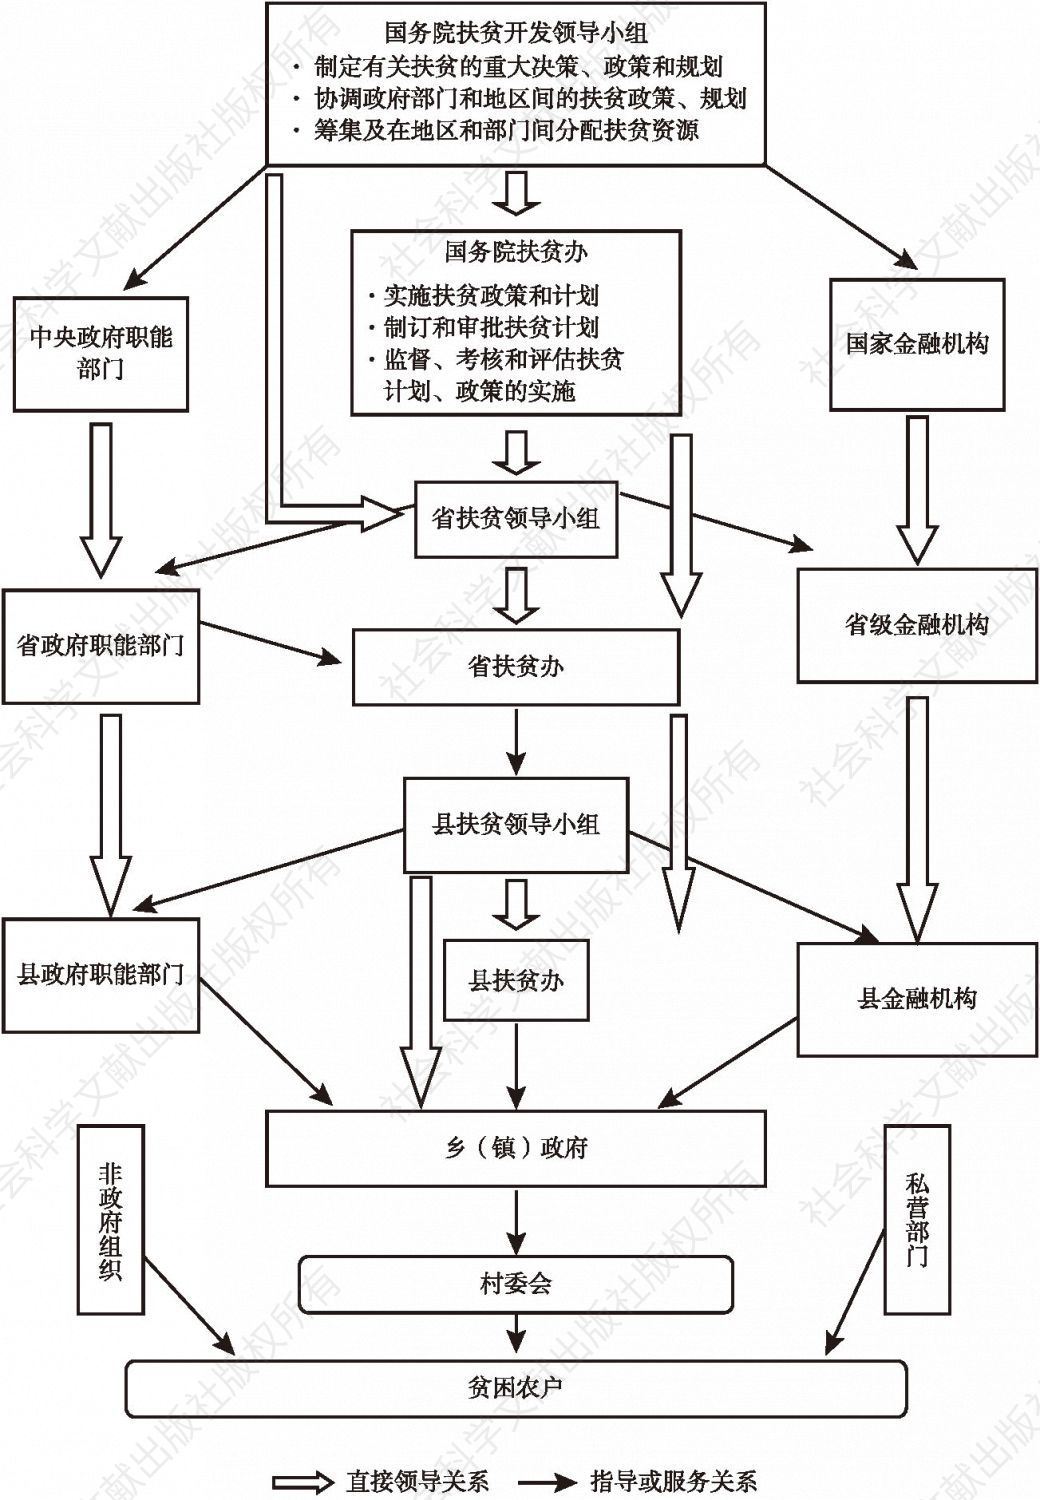 图4-1 中国扶贫开发组织结构